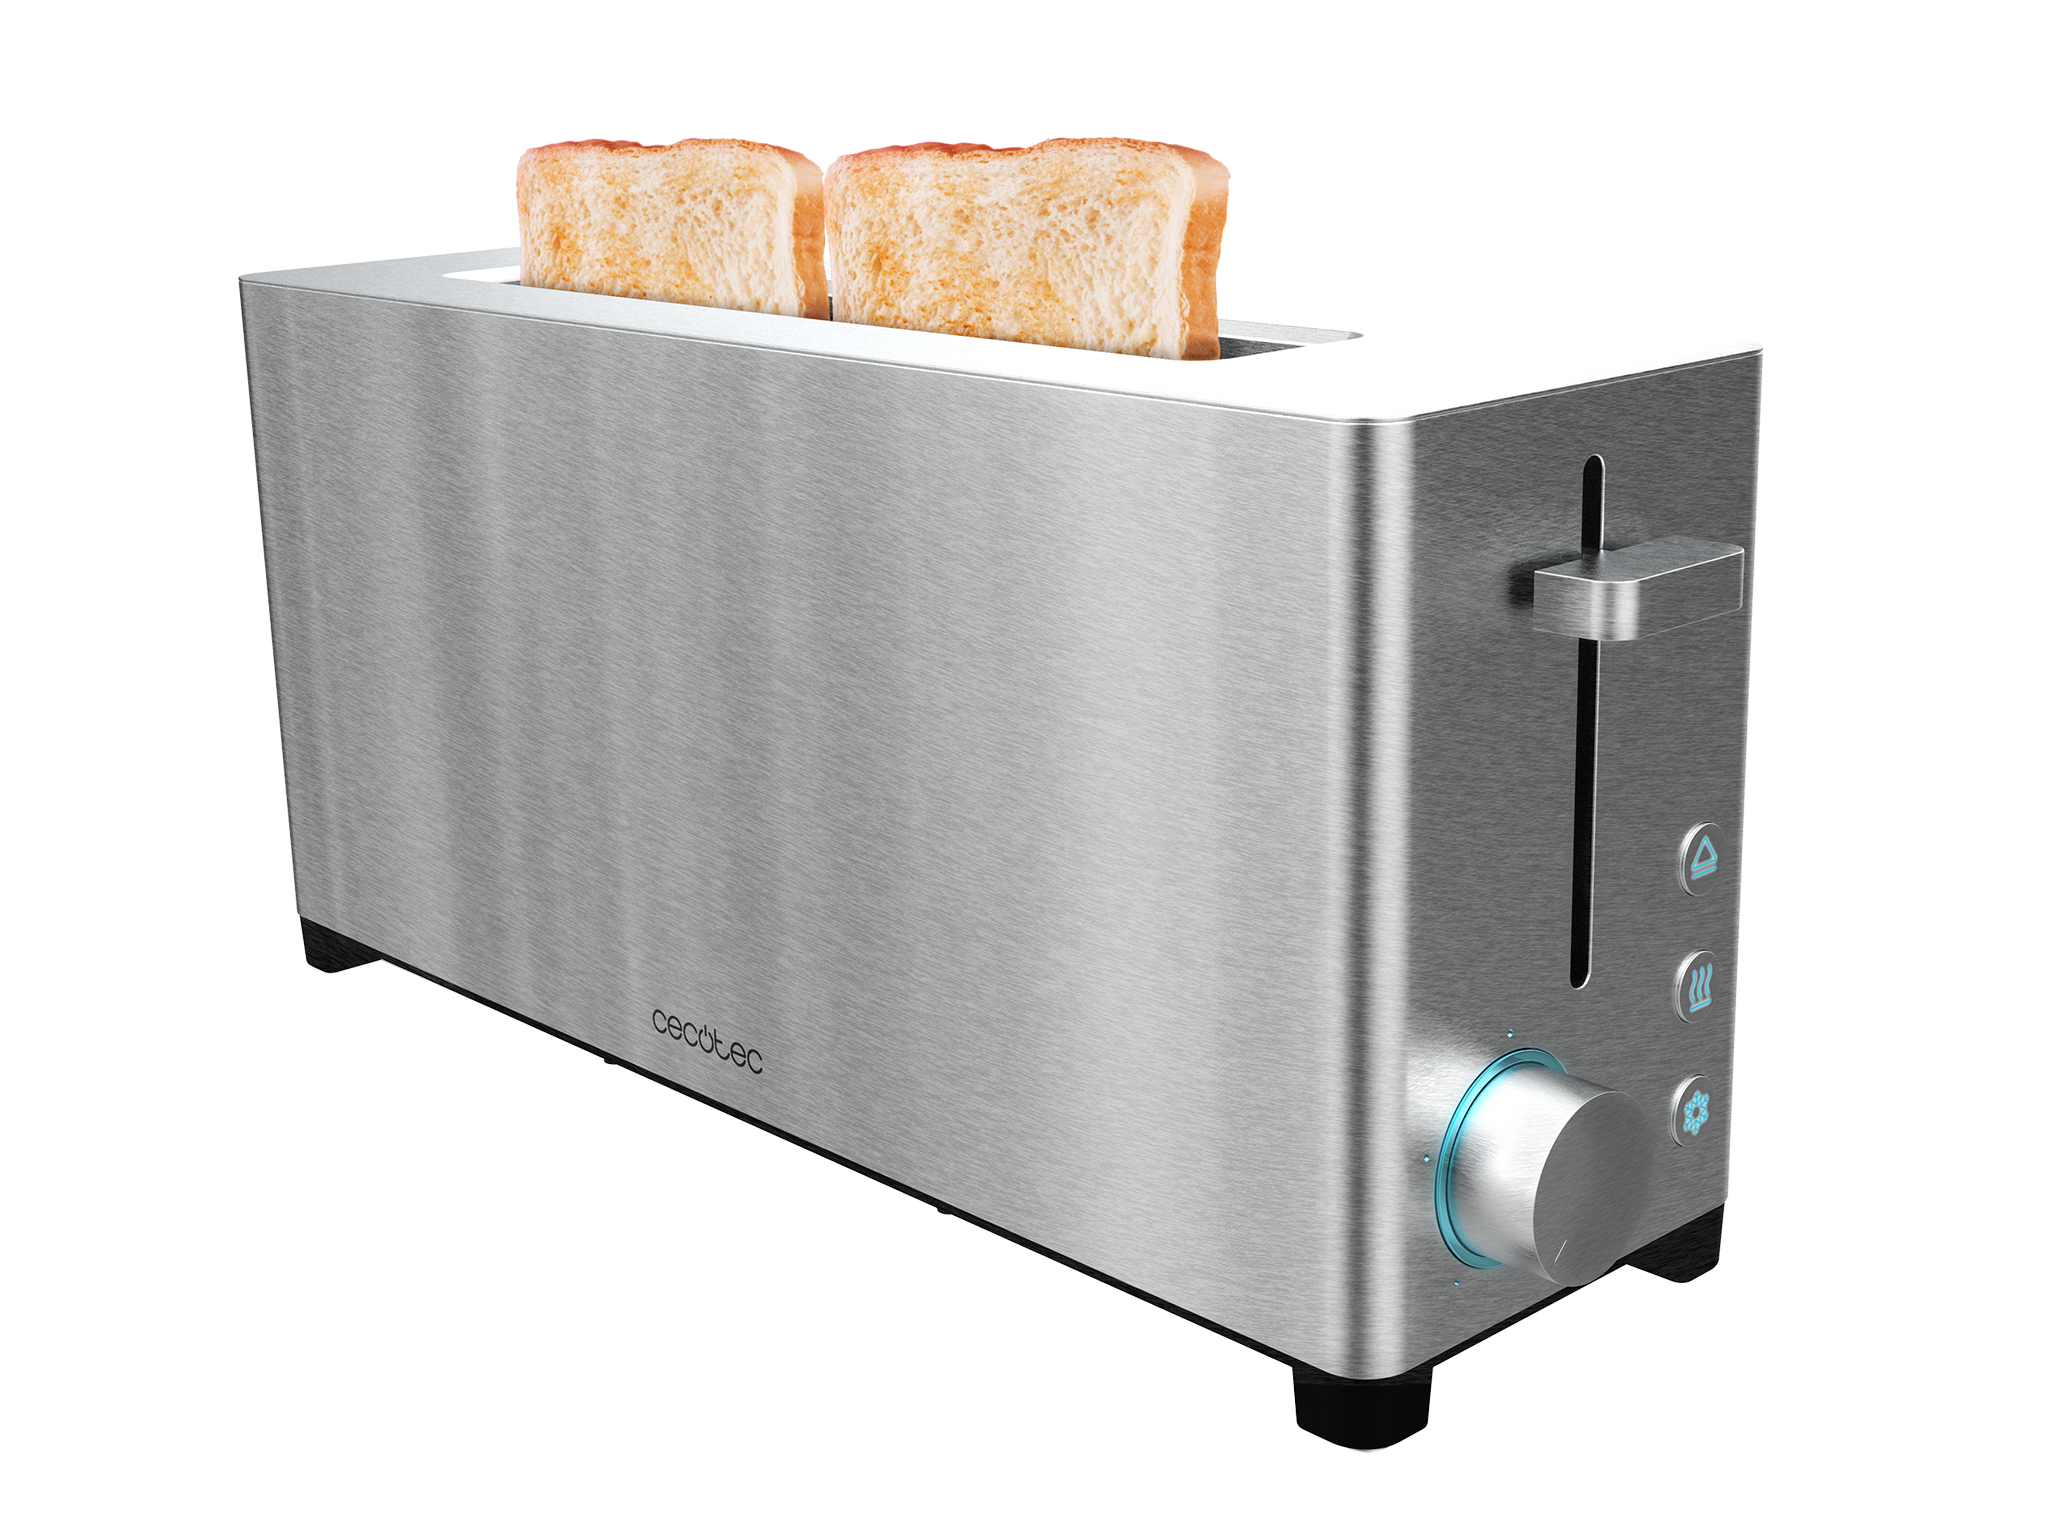 YummyToast Extra Toaster - Einzelner langer Schlitz, Edelstahl, 1050 Watt Leistung, 5 Leistungsstufen, 2 voreingestellte Funktionen, Krümelfach